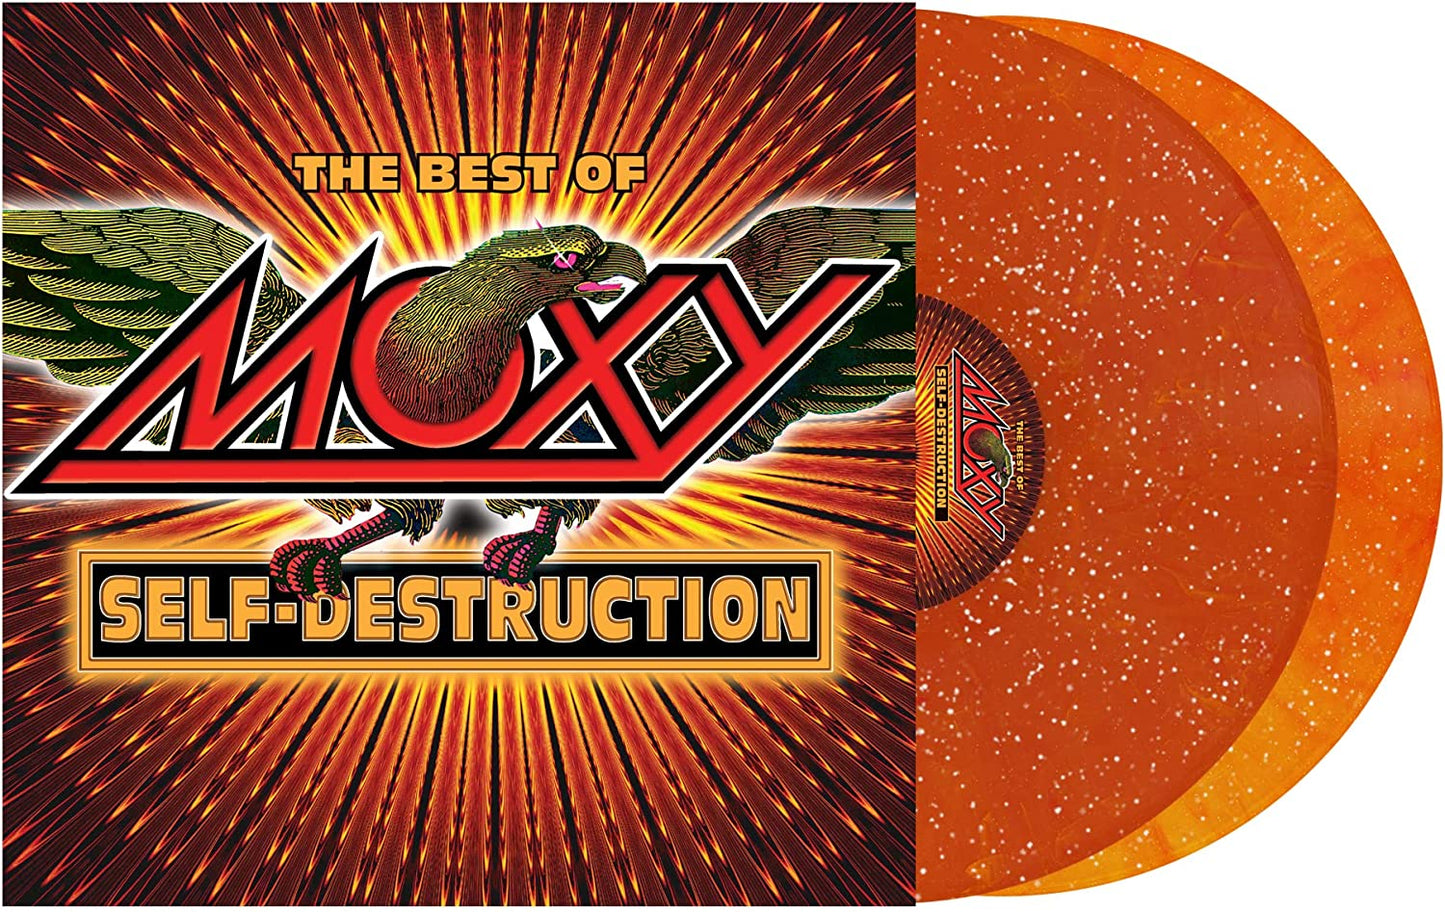 Moxy - Self Destruction: The Best of Moxy - 2LP